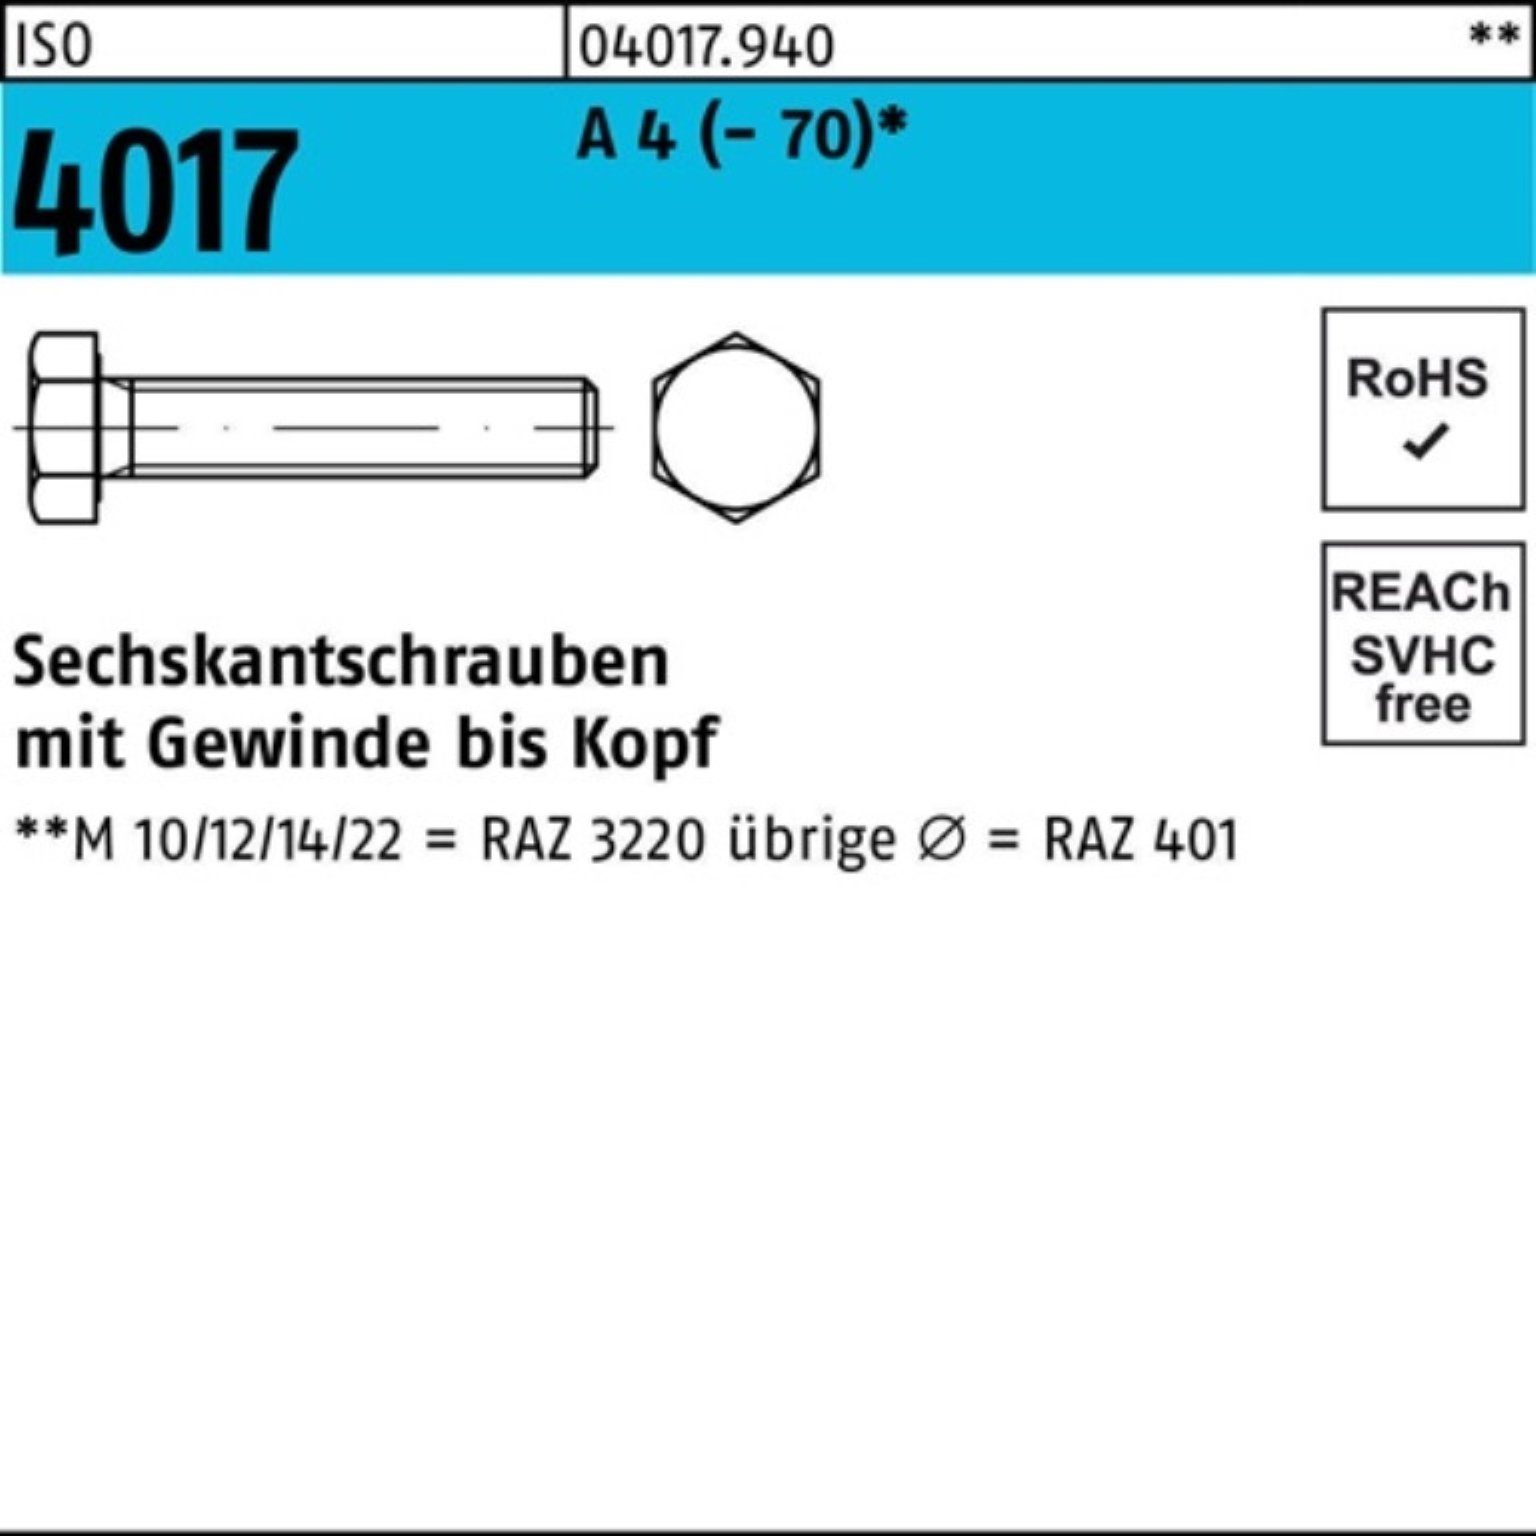 Bufab Sechskantschraube 100er Pack Sechskantschraube ISO 4017 VG M20x 45 A 4 (70) 25 Stück